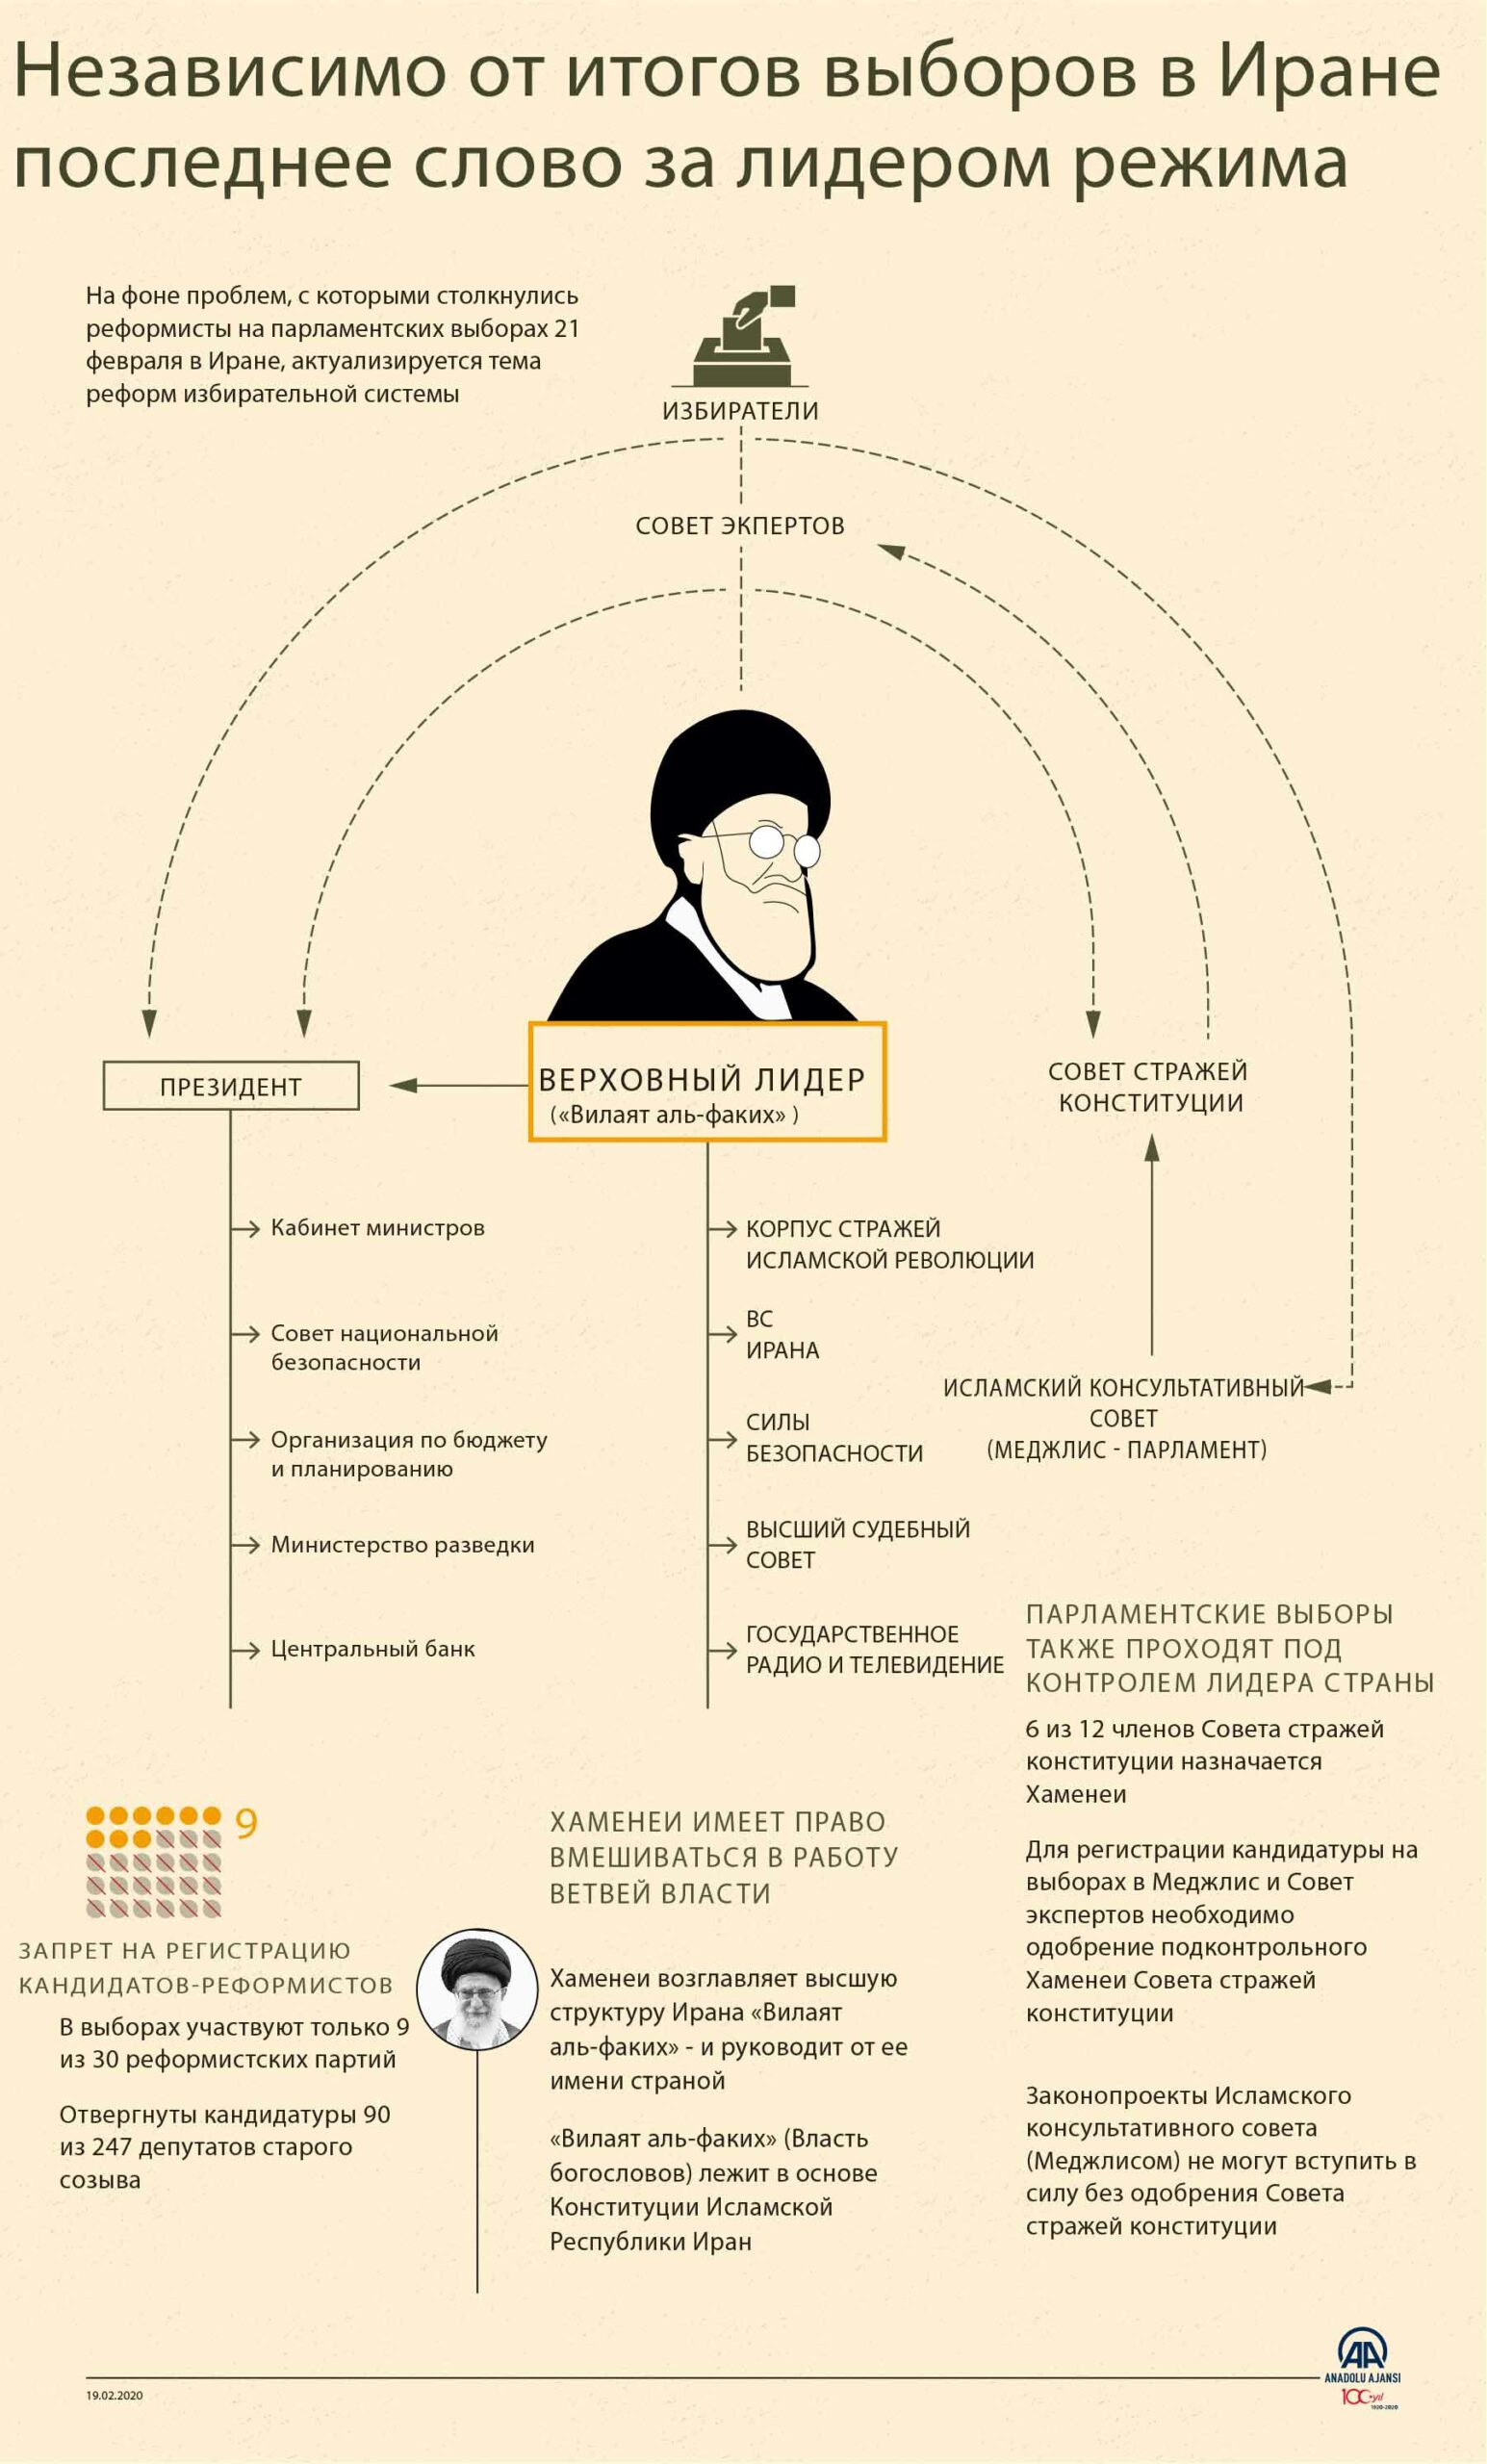 Хаменеи: Участие в выборах — религиозная обязанность